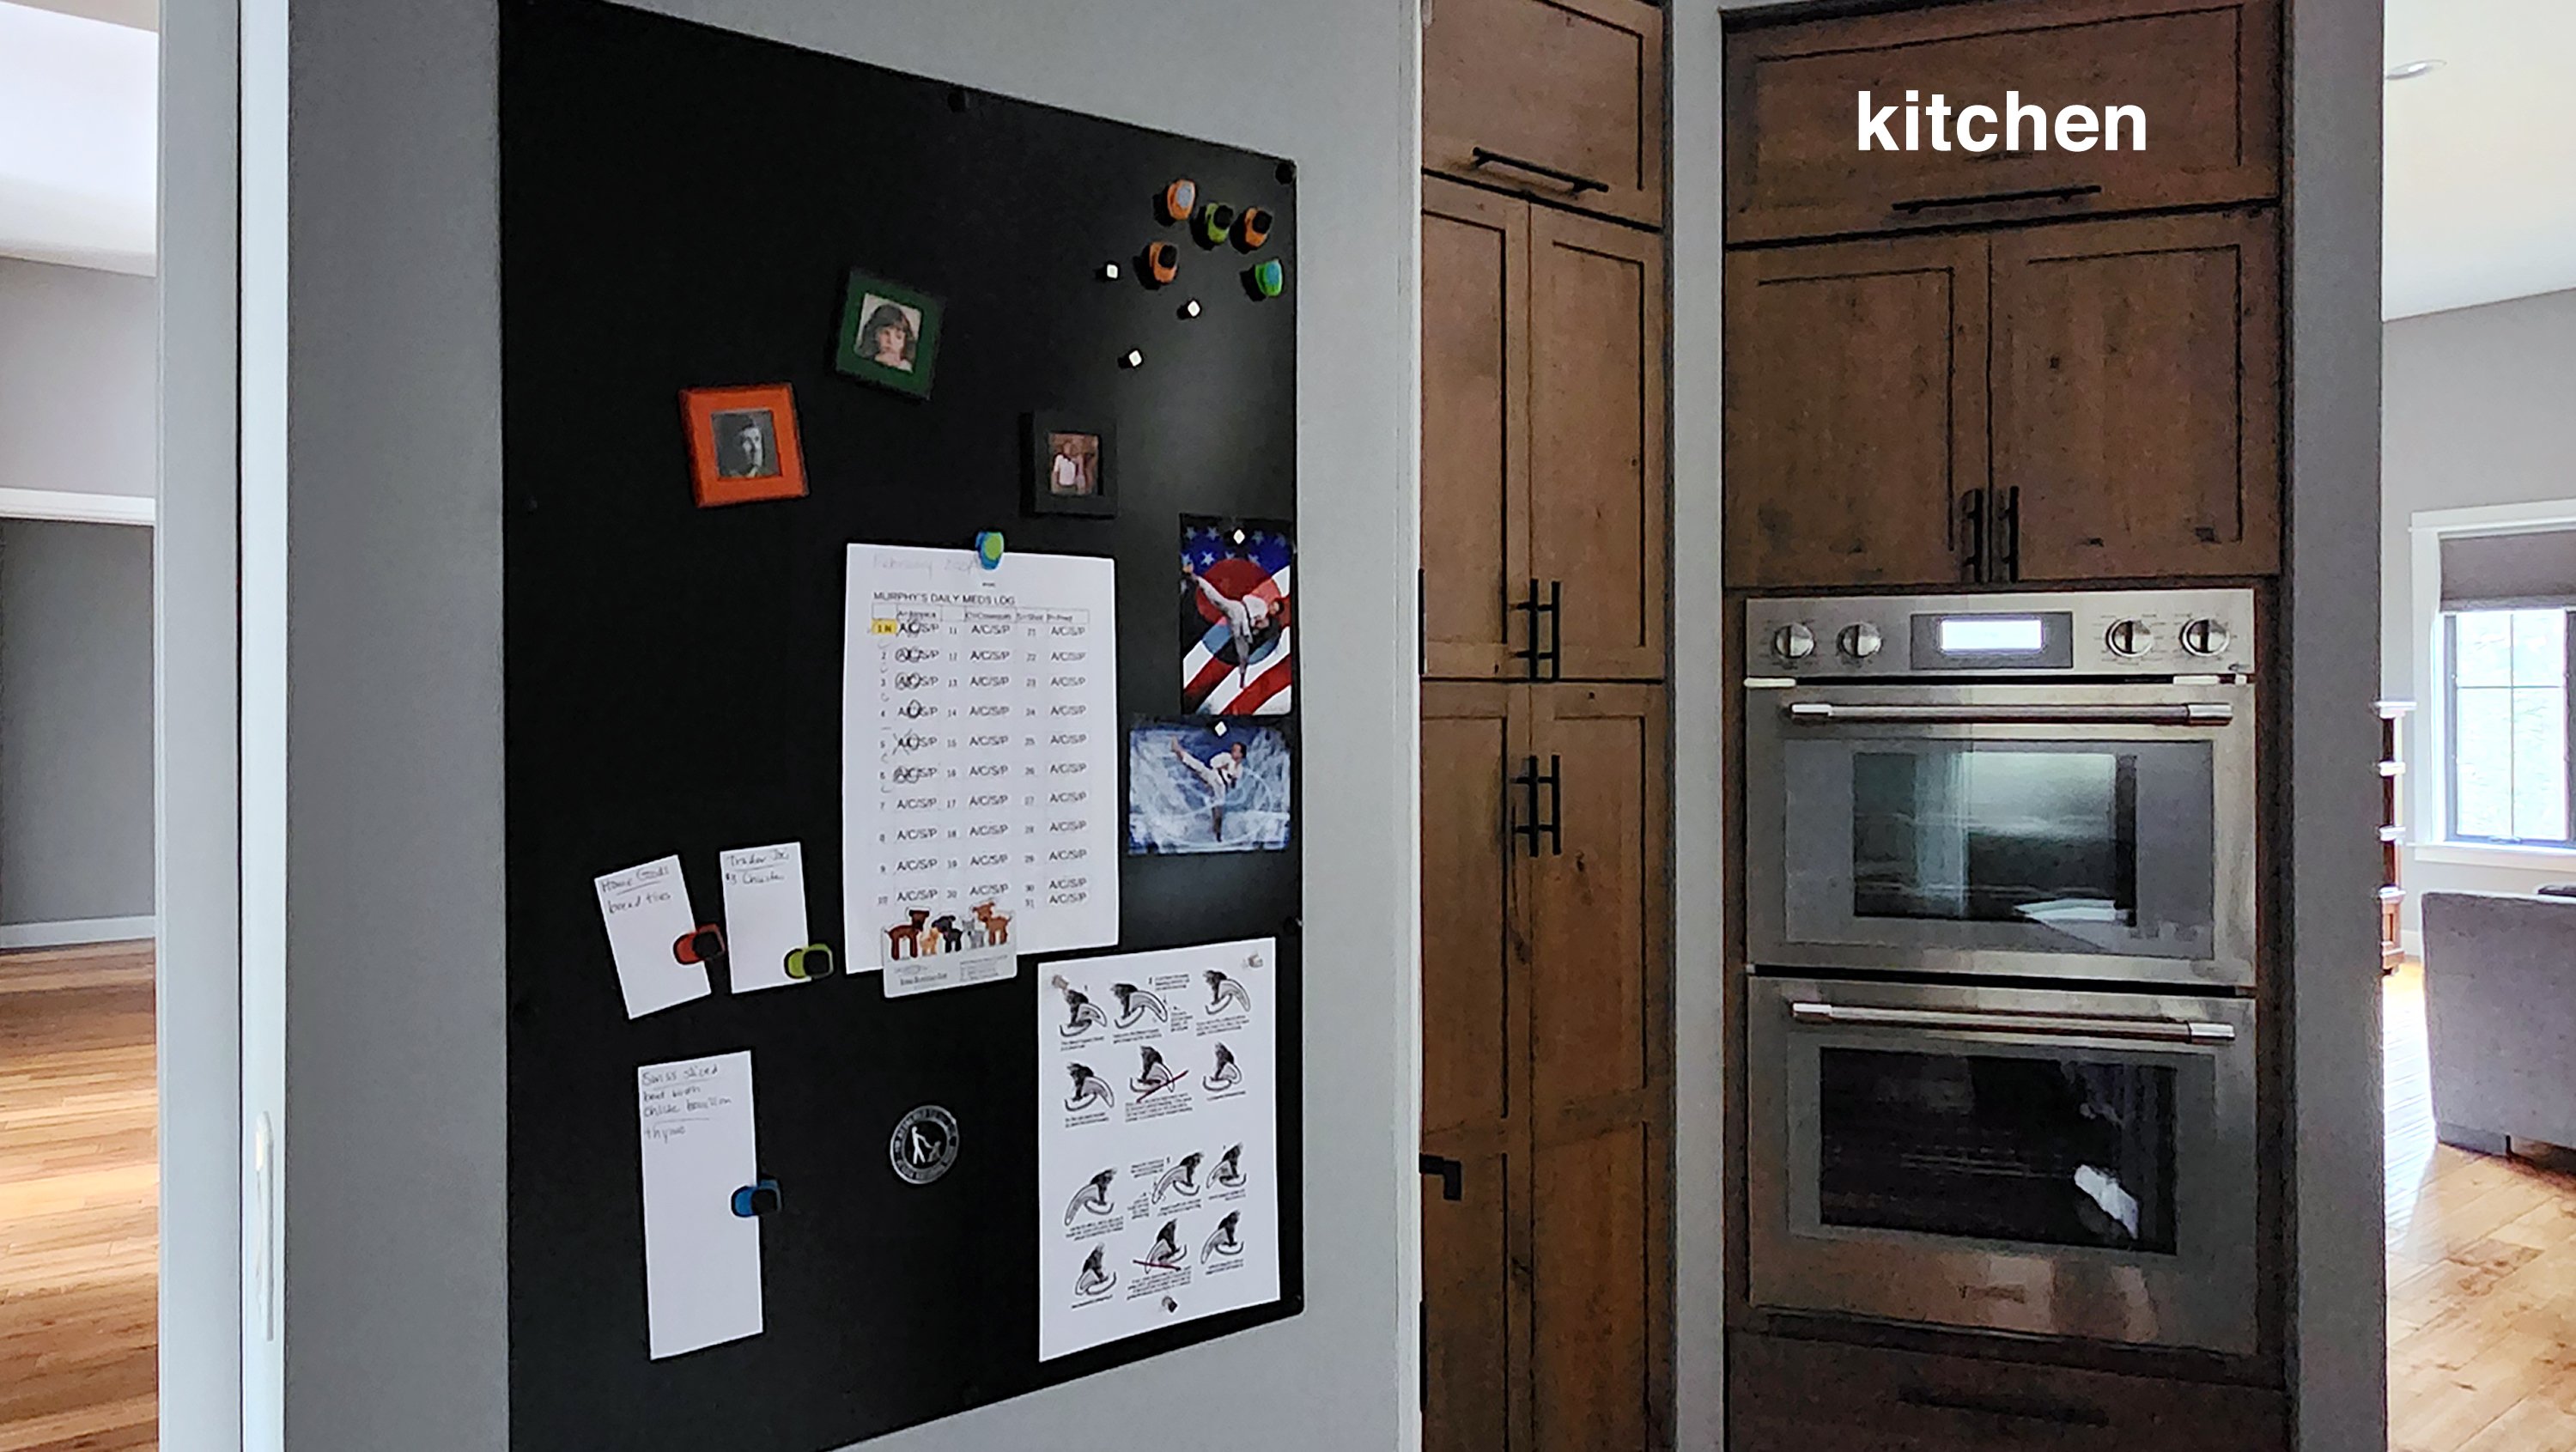 Kitchen"